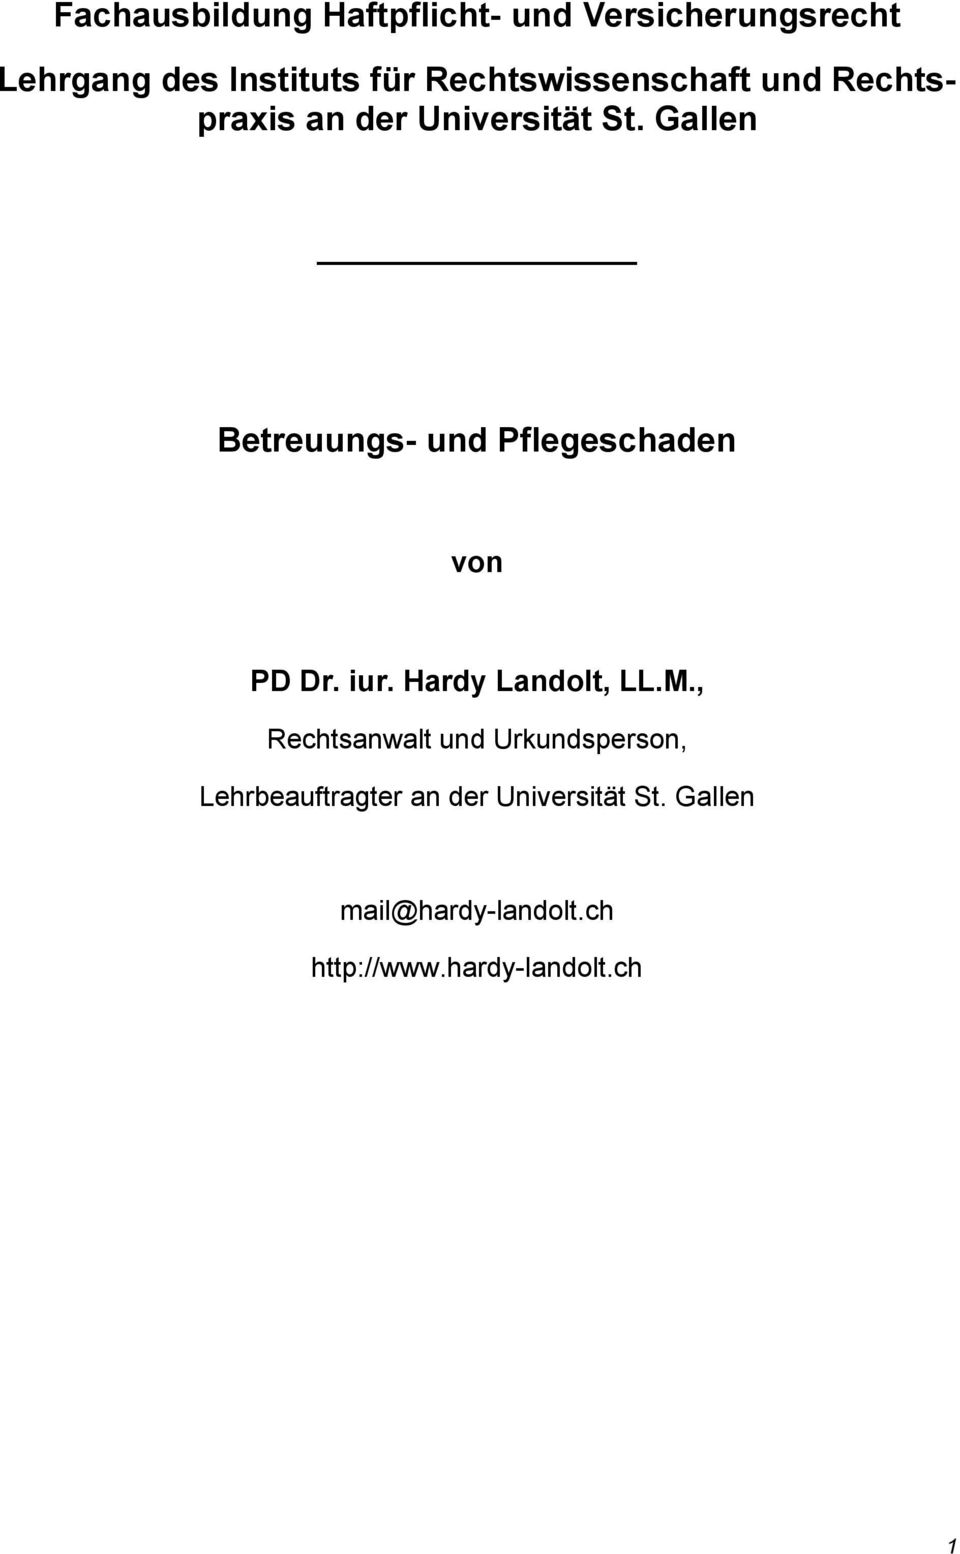 Gallen Betreuungs- und Pflegeschaden von PD Dr. iur. Hardy Landolt, LL.M.